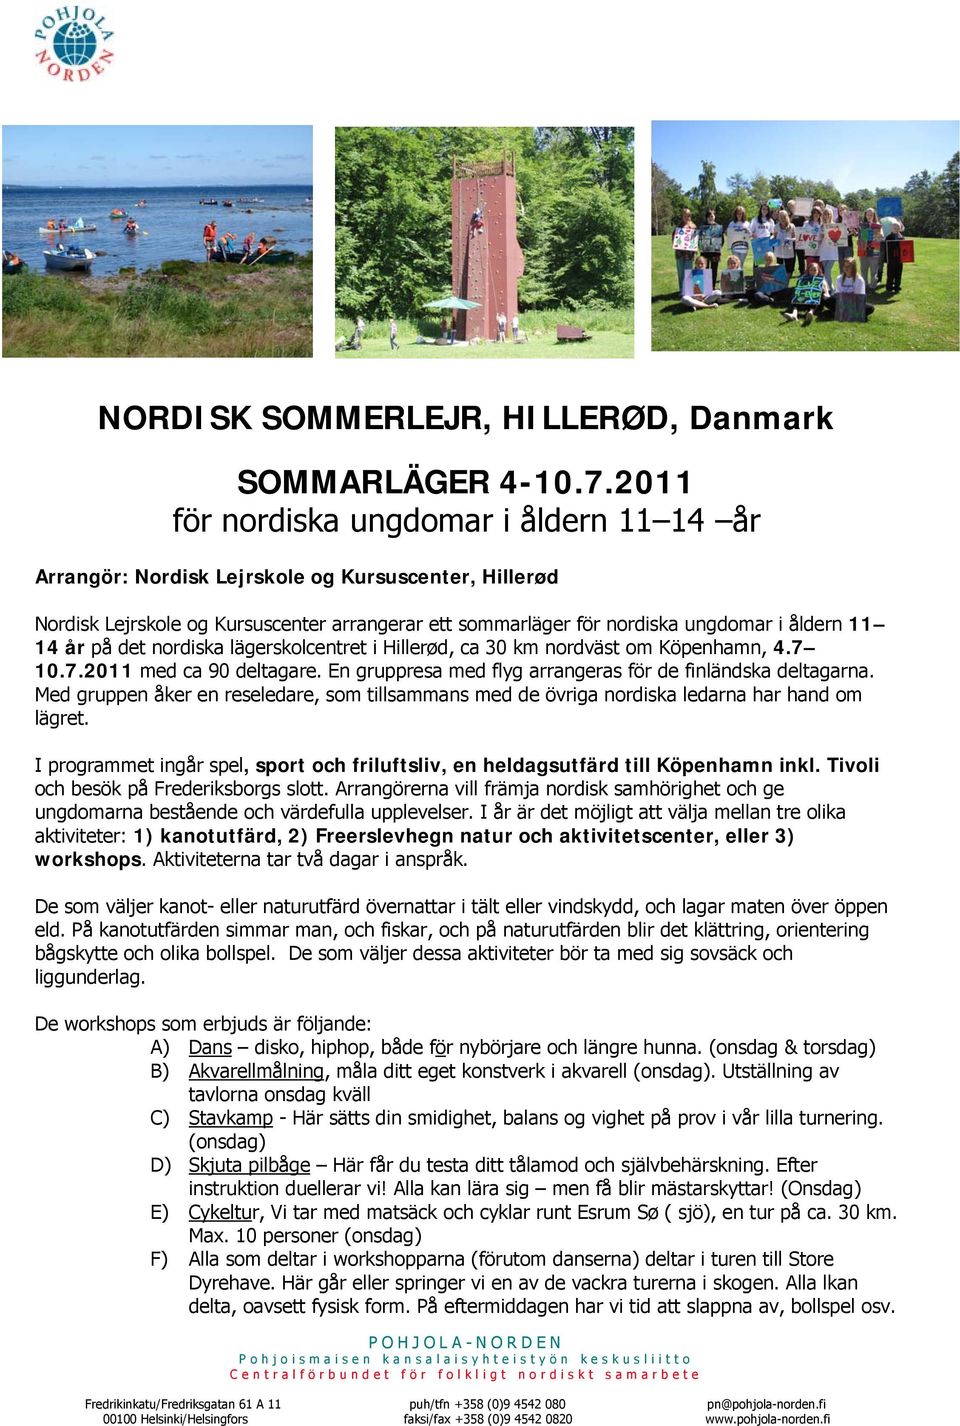 på det nordiska lägerskolcentret i Hillerød, ca 30 km nordväst om Köpenhamn, 4.7 10.7.2011 med ca 90 deltagare. En gruppresa med flyg arrangeras för de finländska deltagarna.